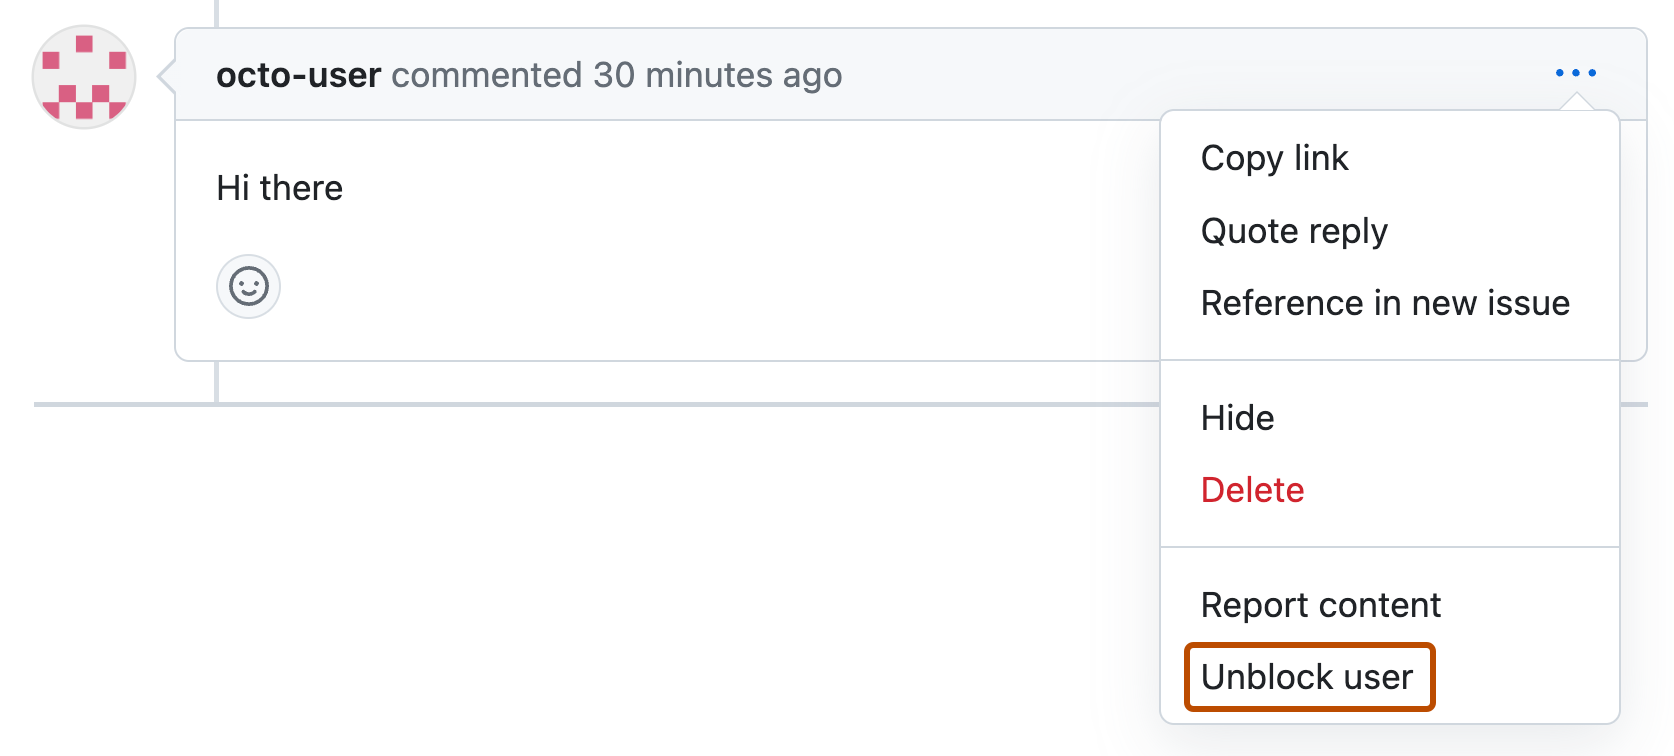 Captura de pantalla de un comentario de solicitud de cambios de octo-user. Debajo de un icono de tres puntos horizontales, se expande un menú desplegable y aparece la opción "Desbloquear usuario" con un contorno naranja.